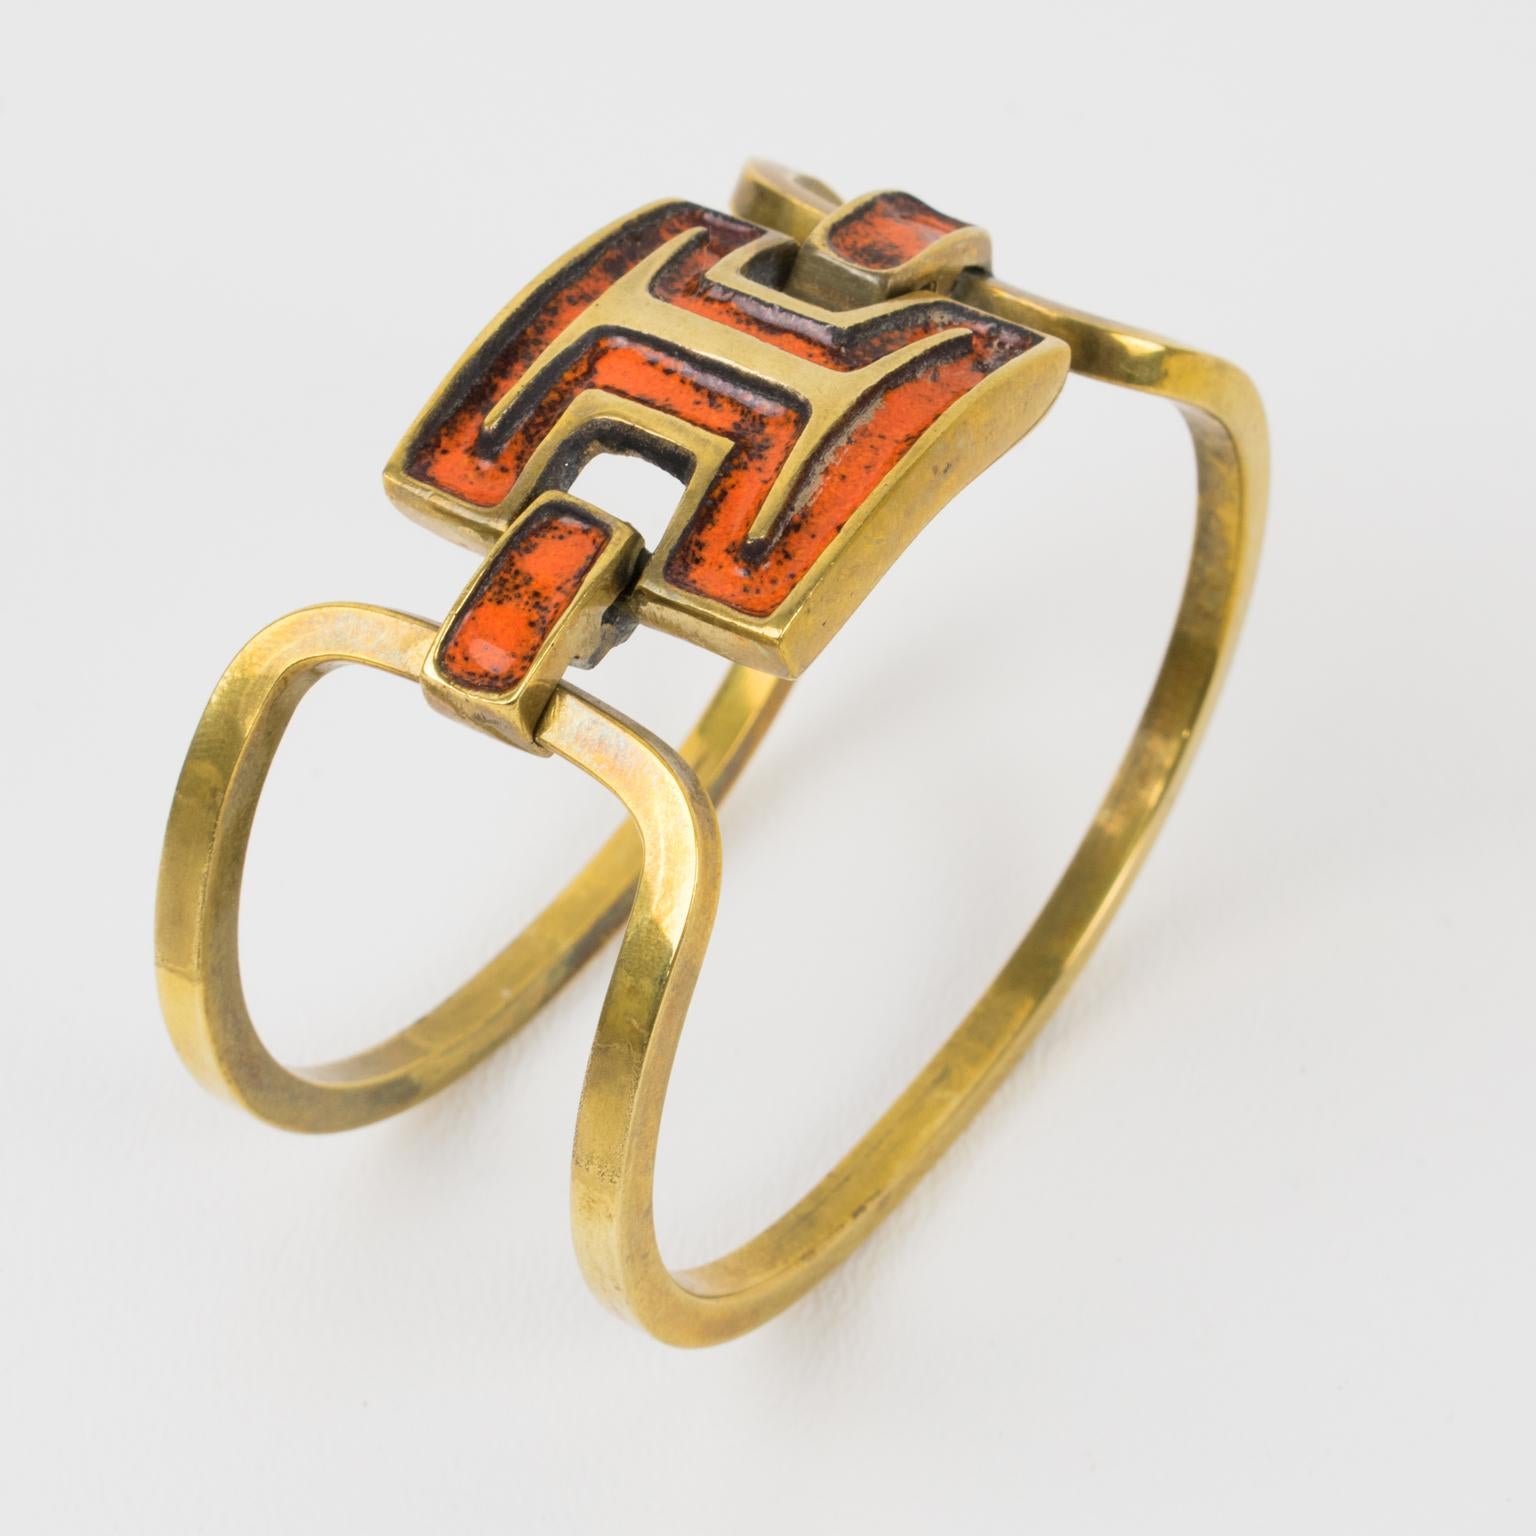 Le designer français St Luc a conçu ce joli bracelet moderniste en bronze et émail dans les années 1960. La pièce présente un design à deux bandes en bronze doré avec des éléments géométriques sculptés en métal bronze doré surmontés d'émail orange